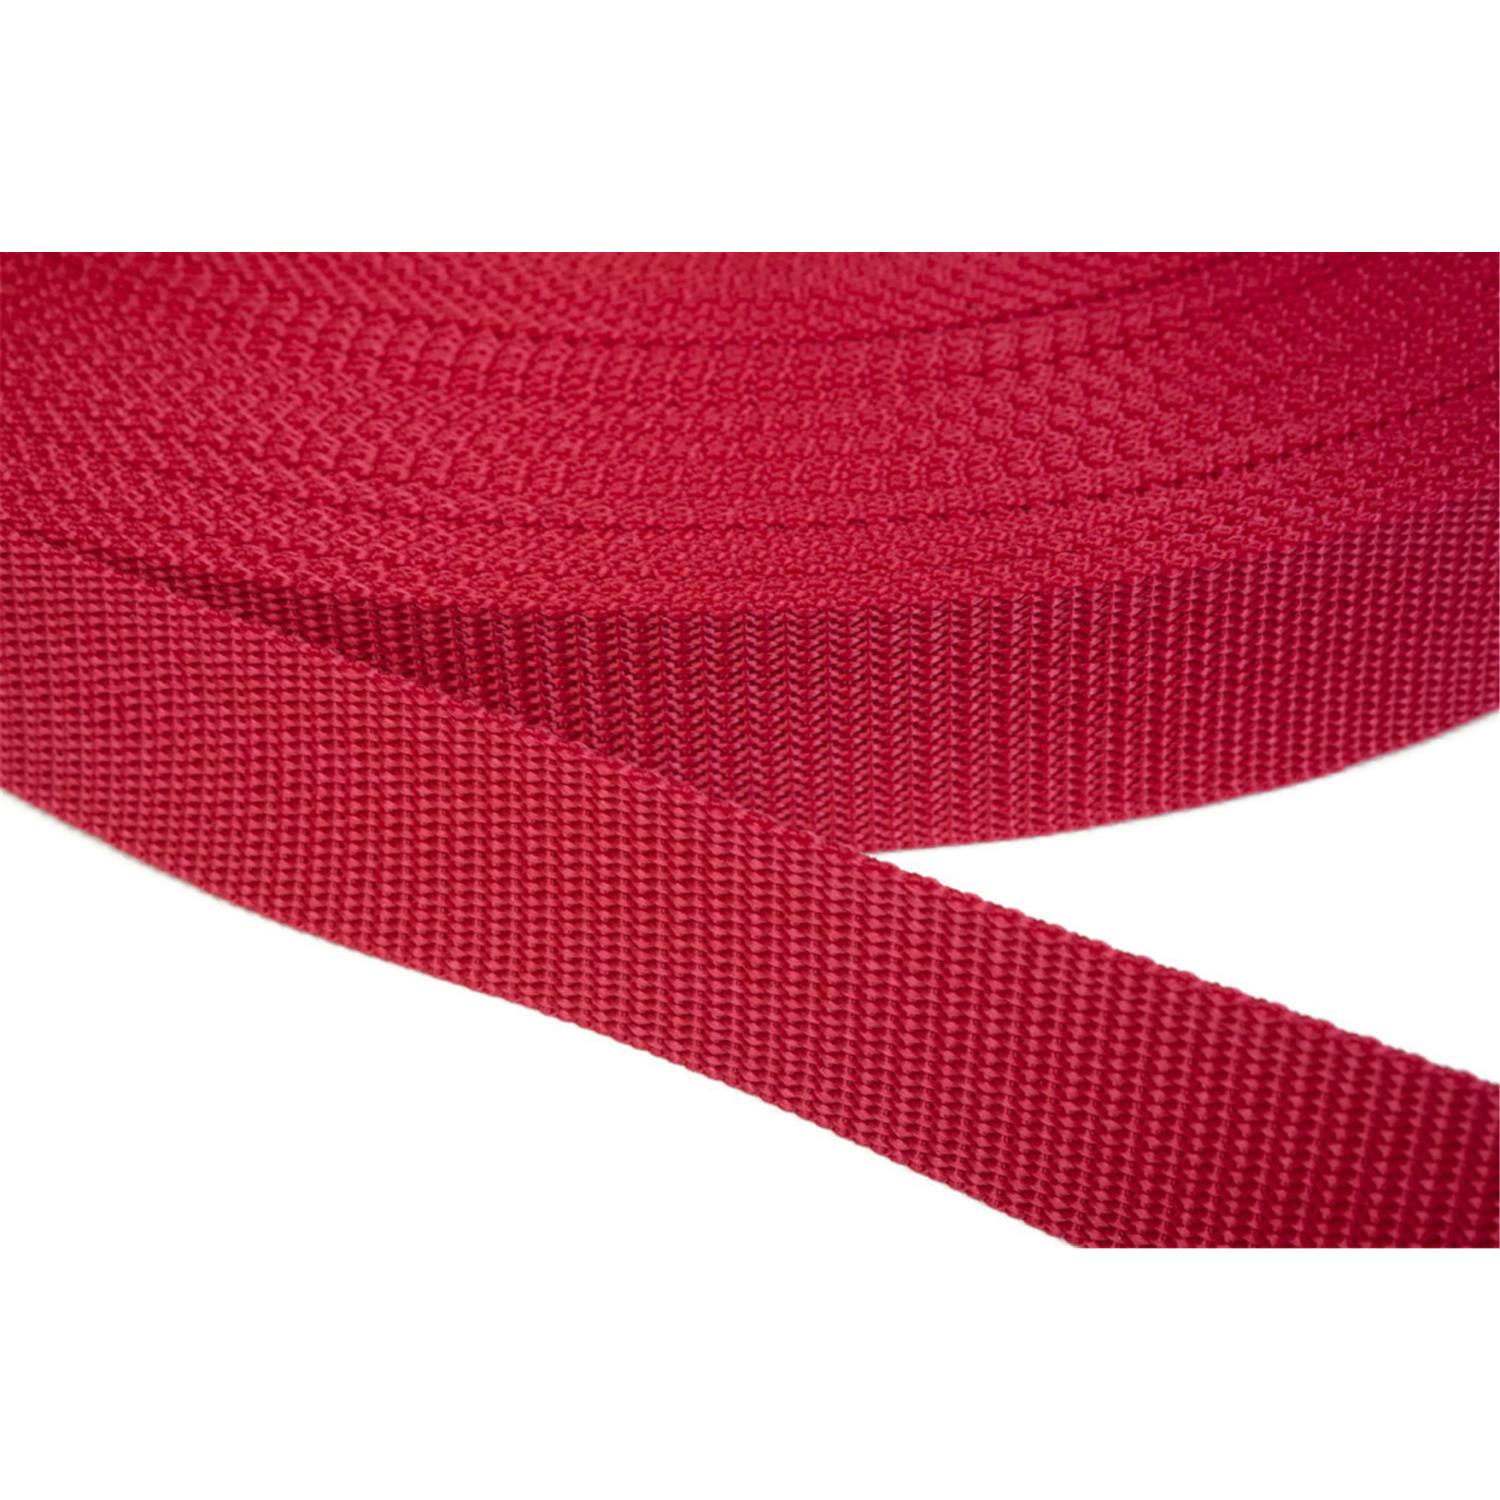 Gurtband 30mm breit aus Polypropylen in 41 Farben 19 - rot 6 Meter